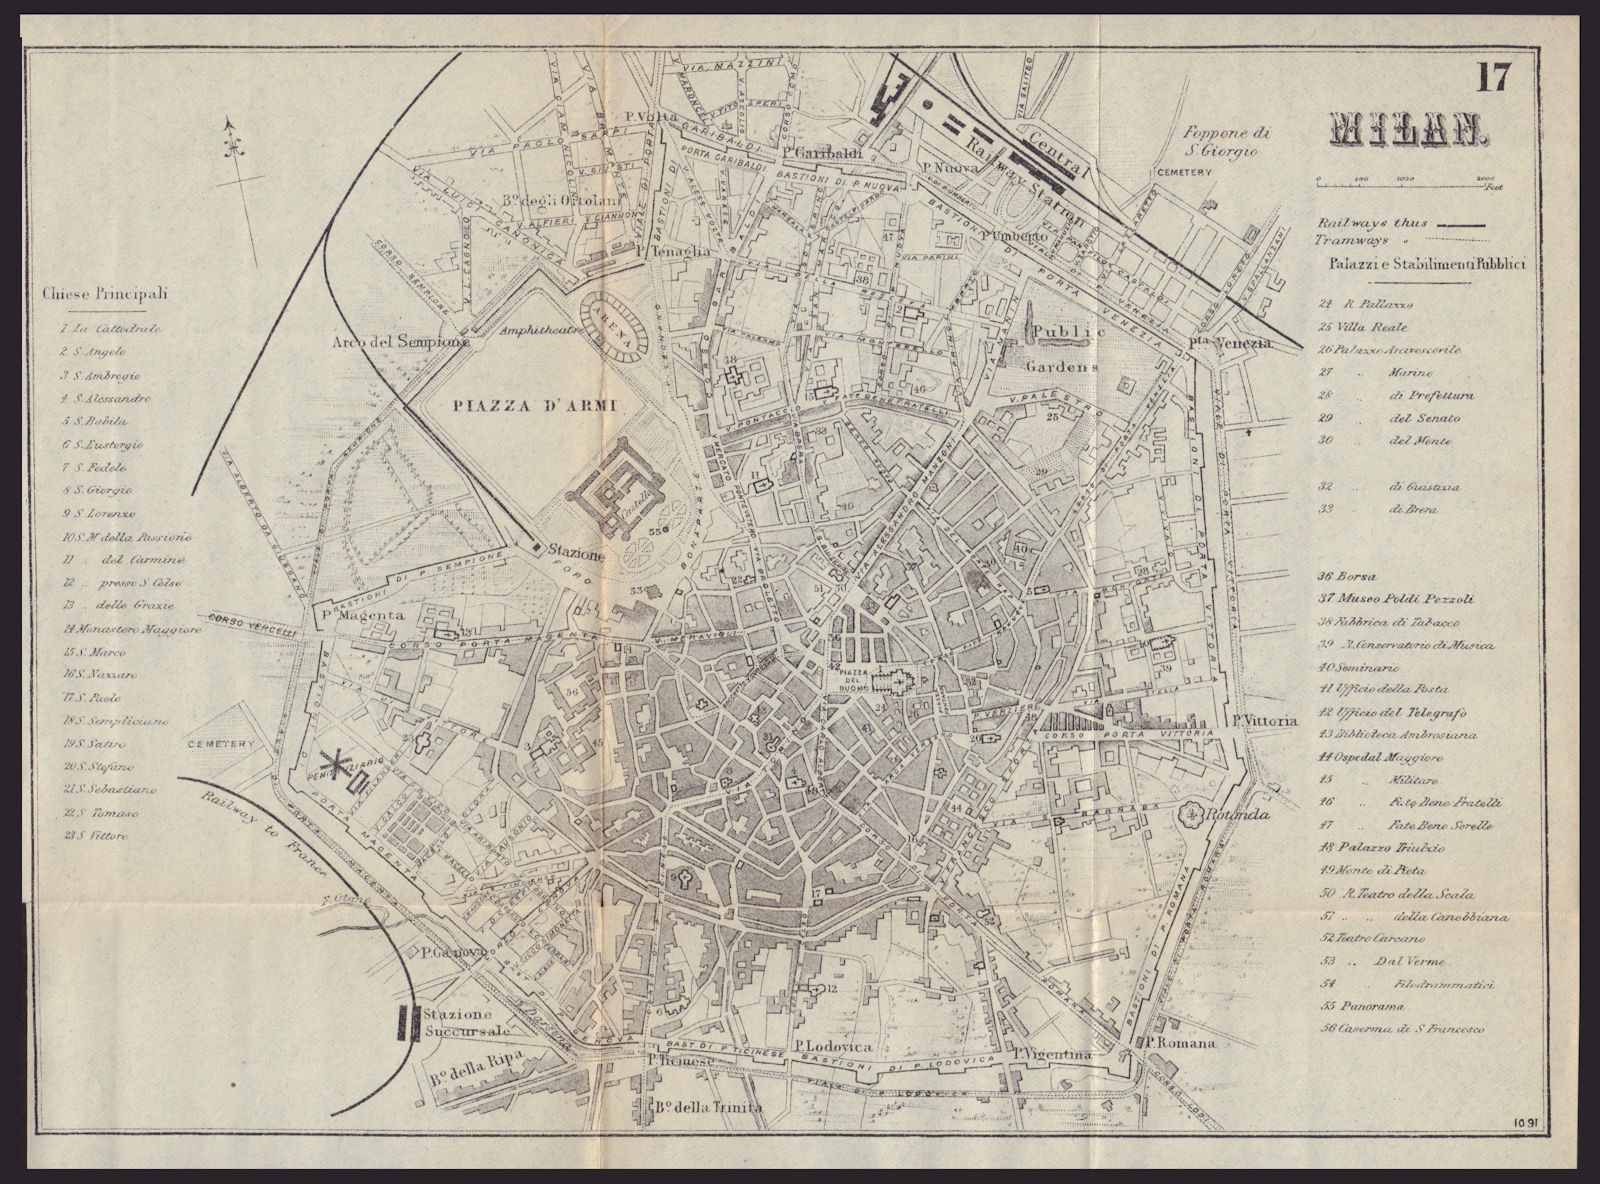 MILAN MILANO antique town plan city map. Italy. BRADSHAW 1893 old